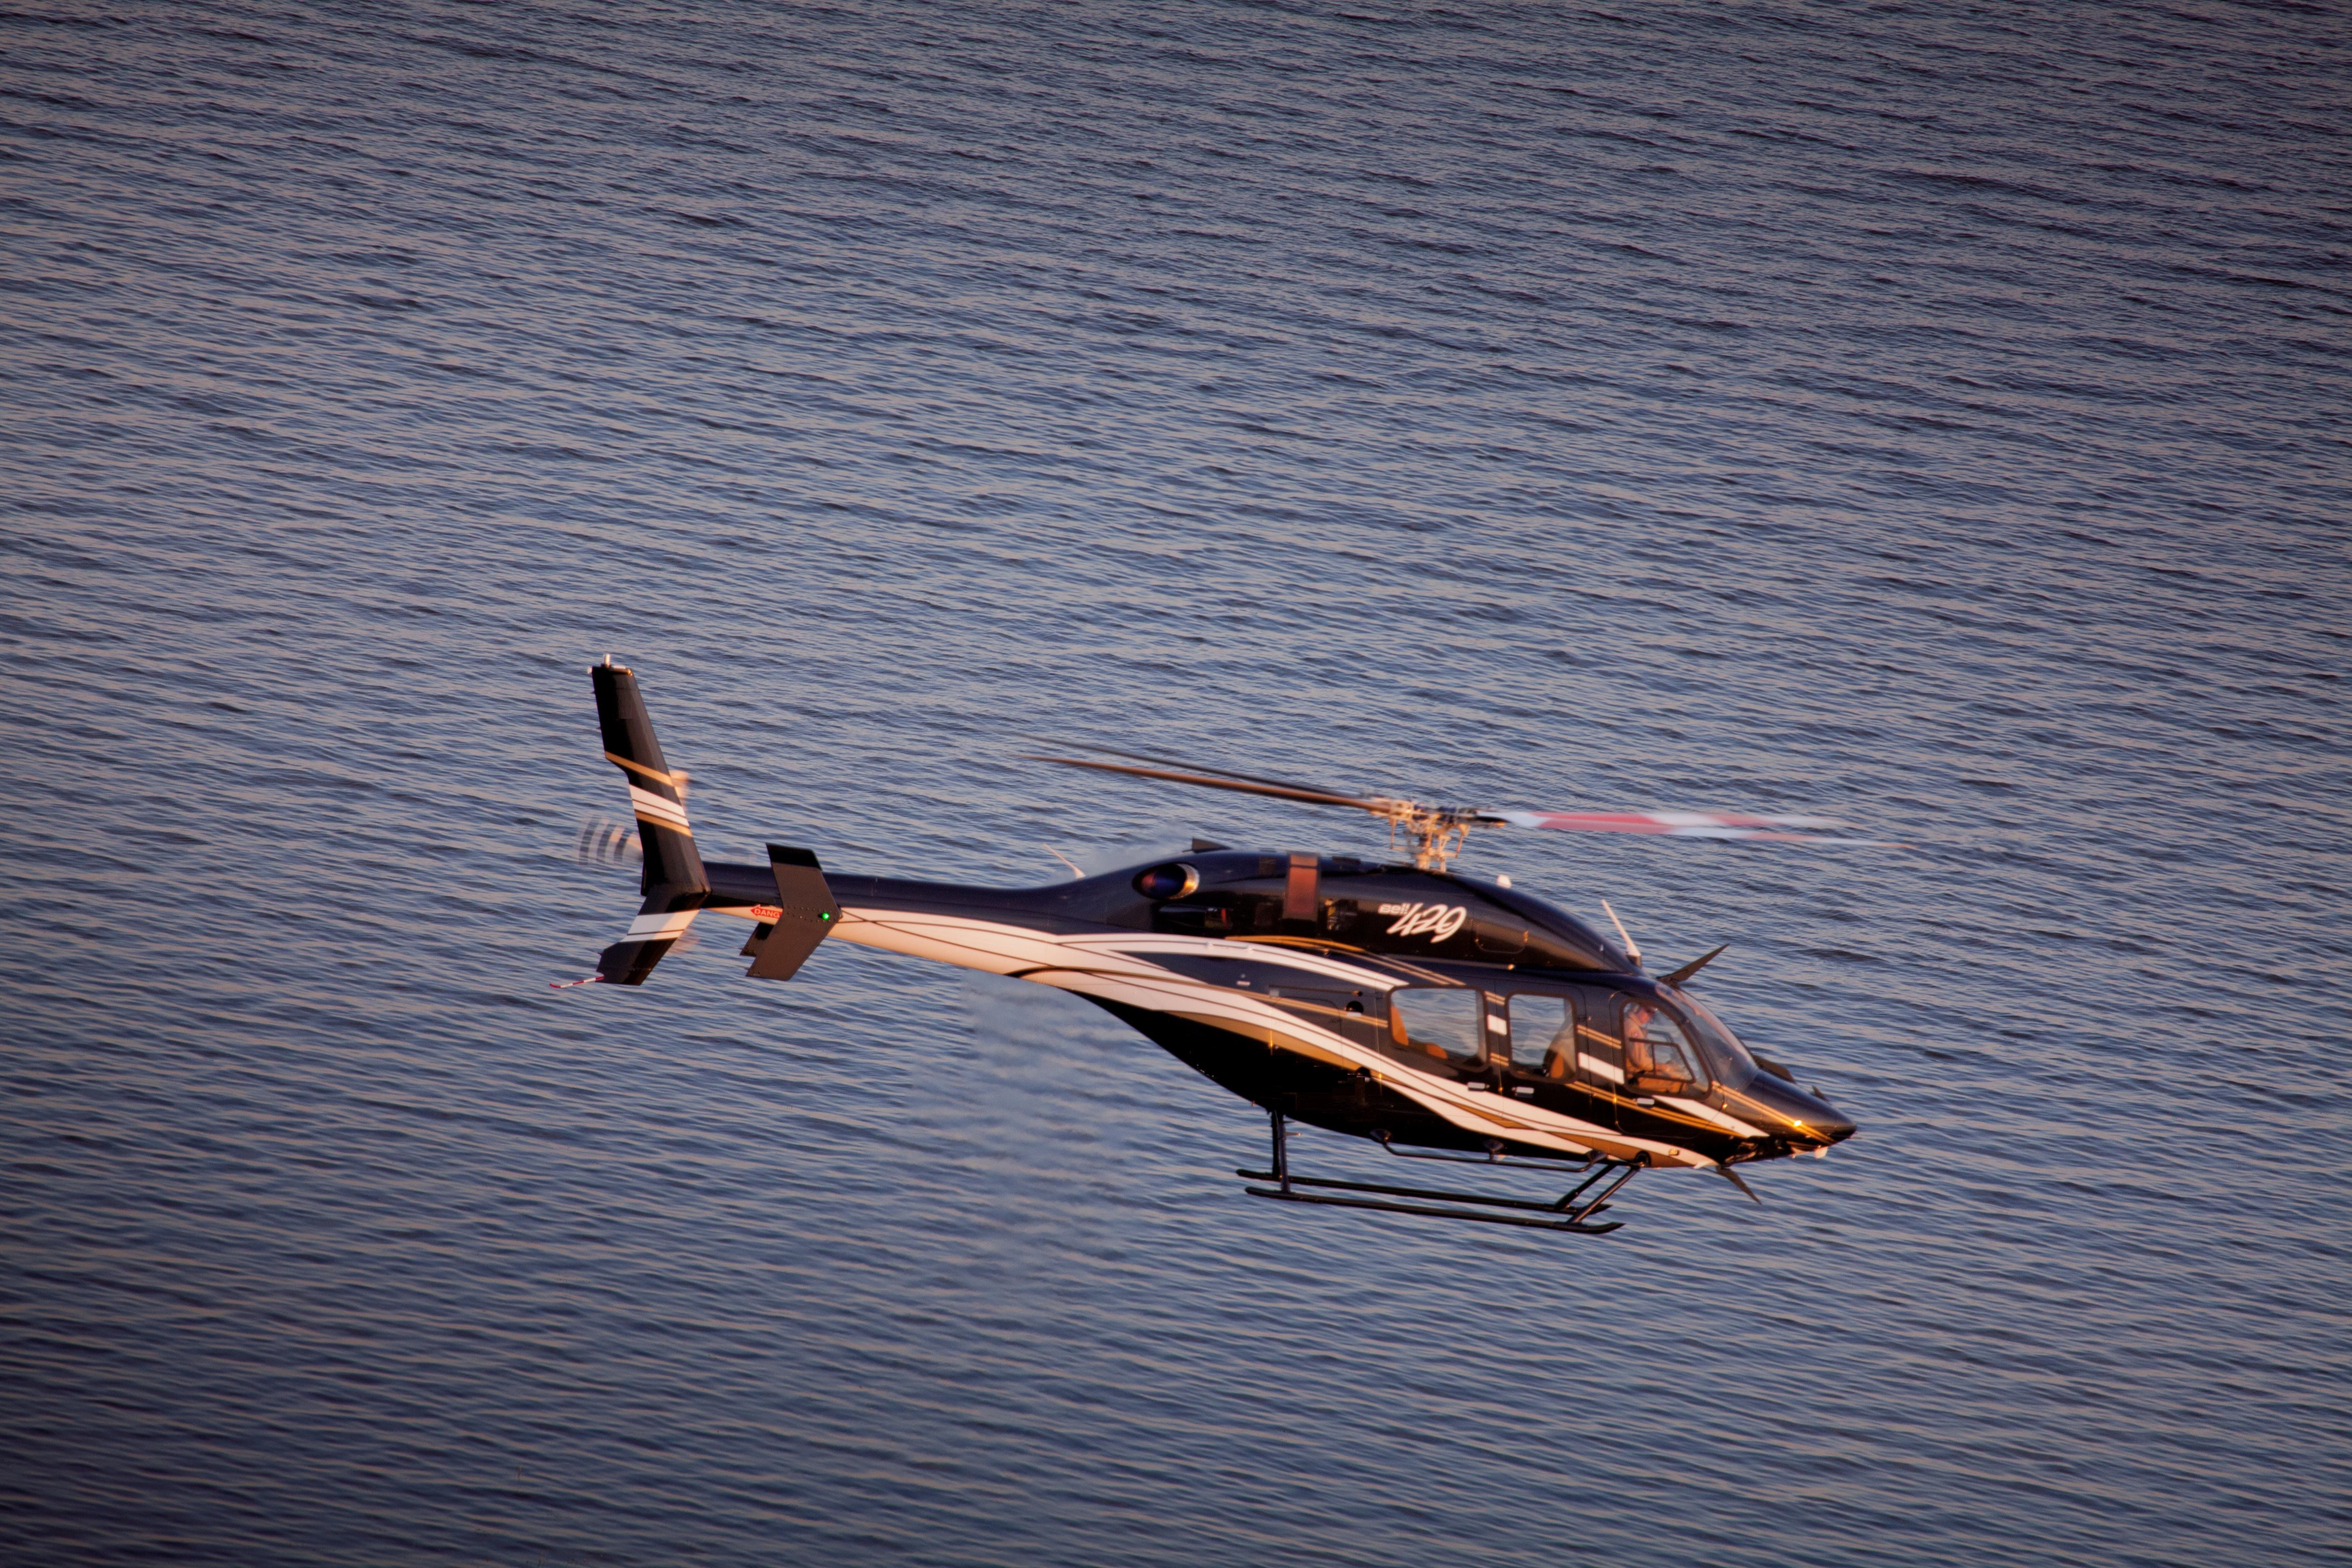 Inchirieri elicopter 6 pasageri